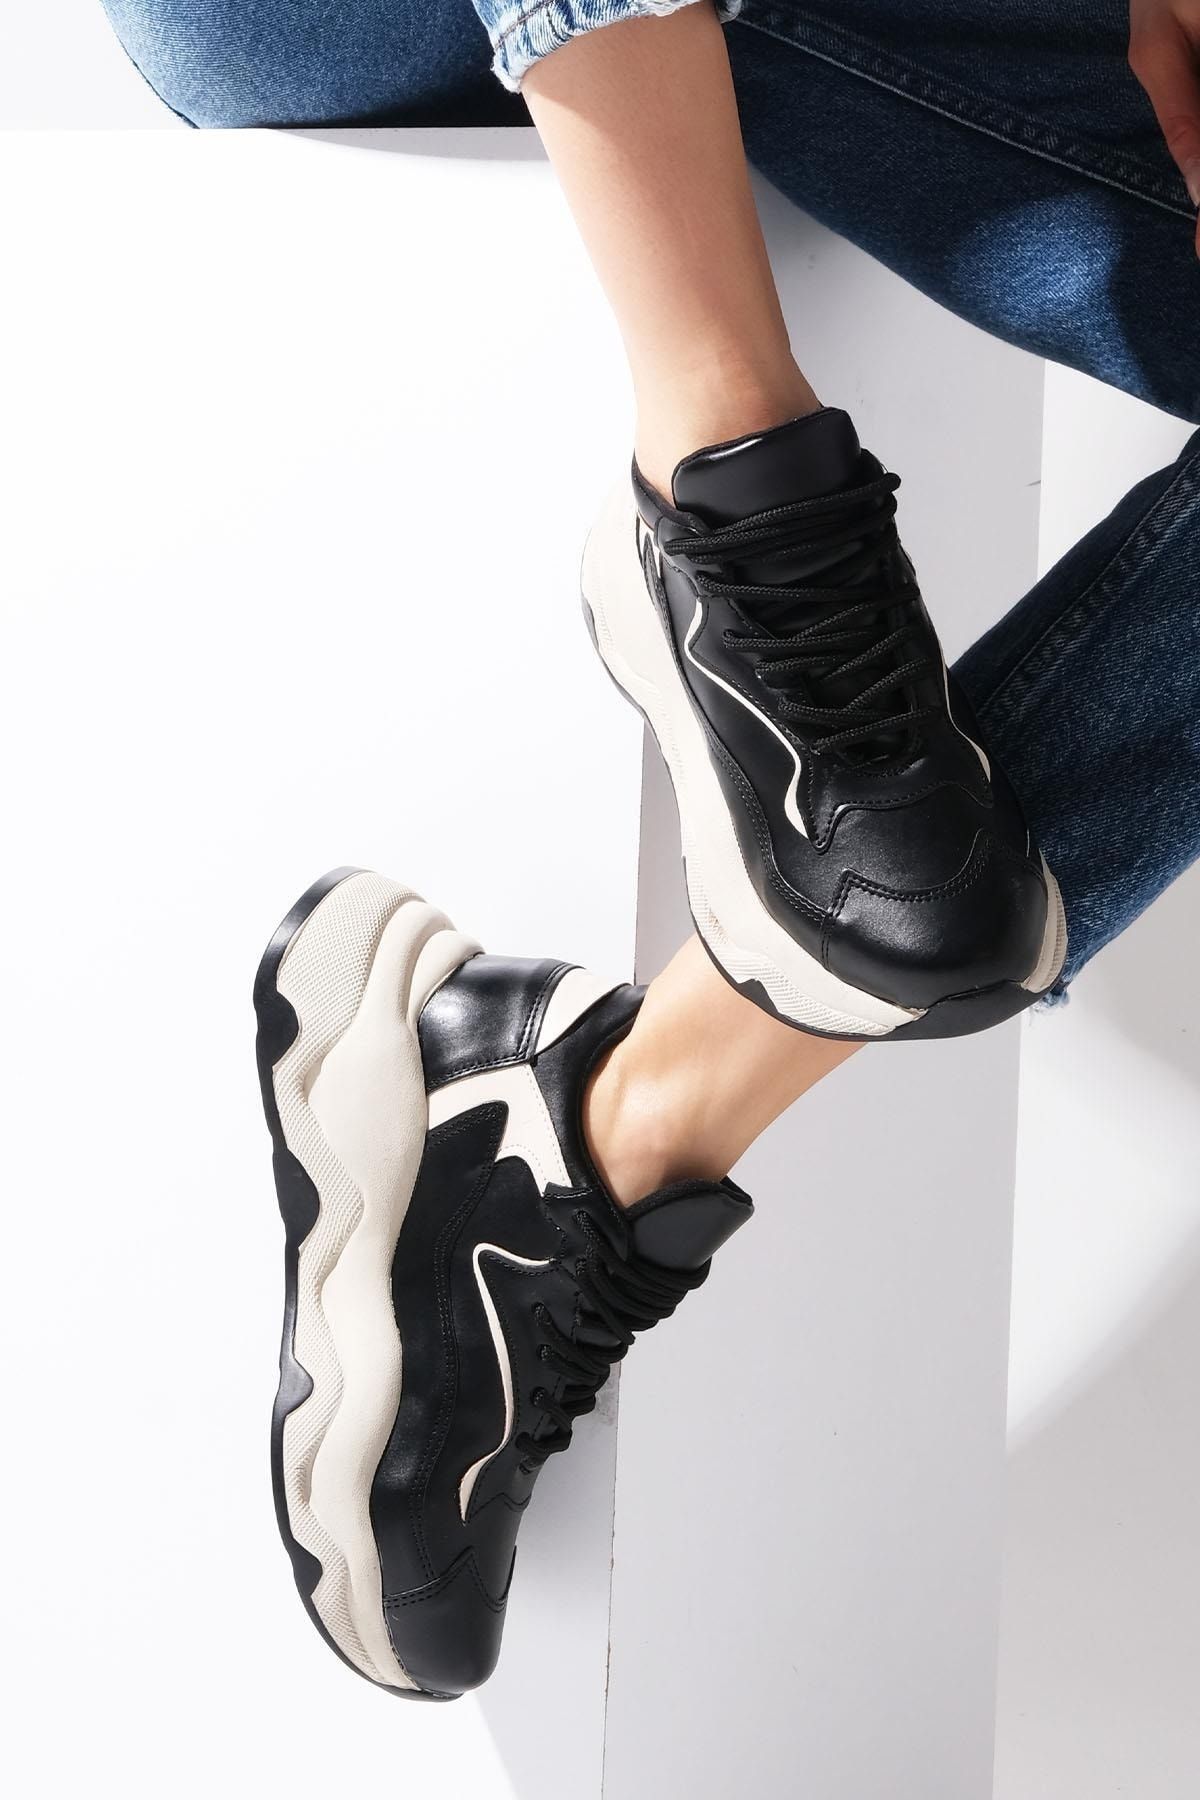 Mio Gusto Siyah Renk Kadın Günlük Sneaker Spor Ayakkabı